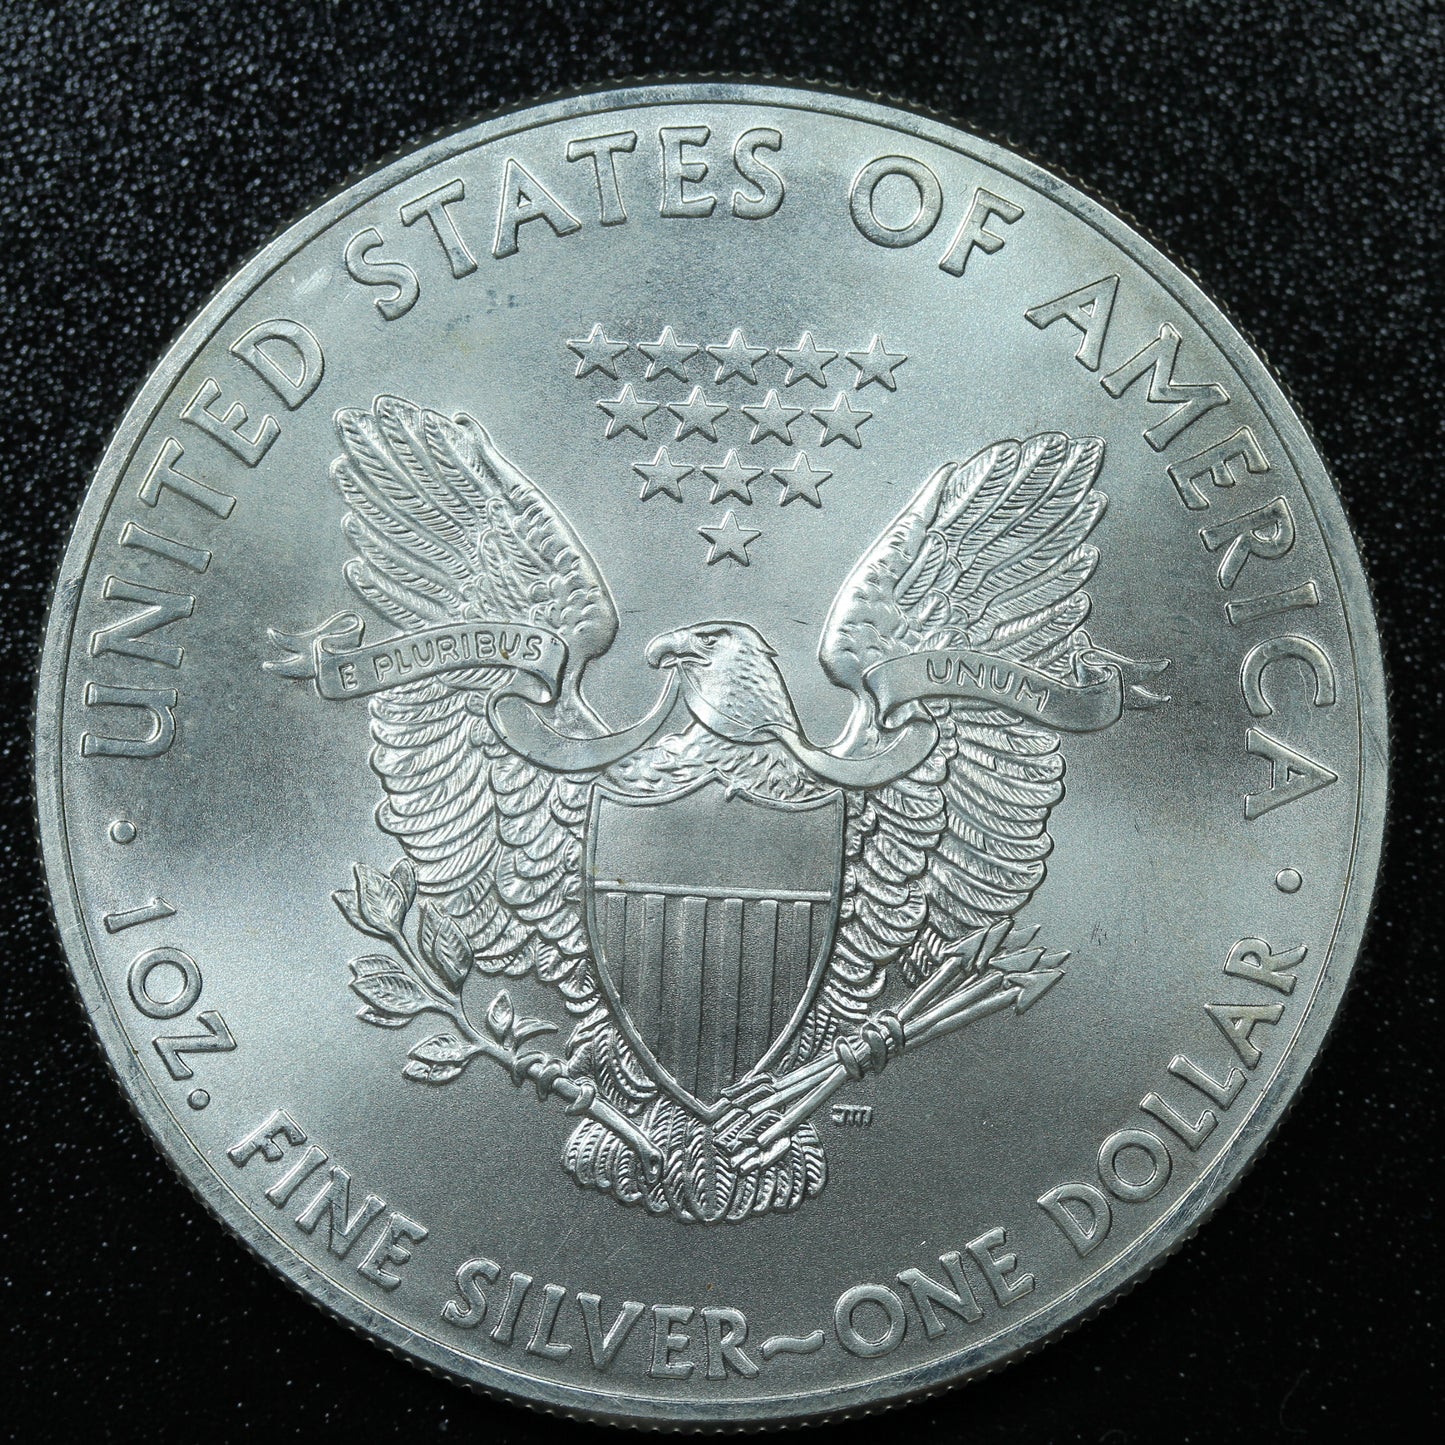 2015 American Silver Eagle 1 oz .999 Fine Silver Coin Marks/Spots